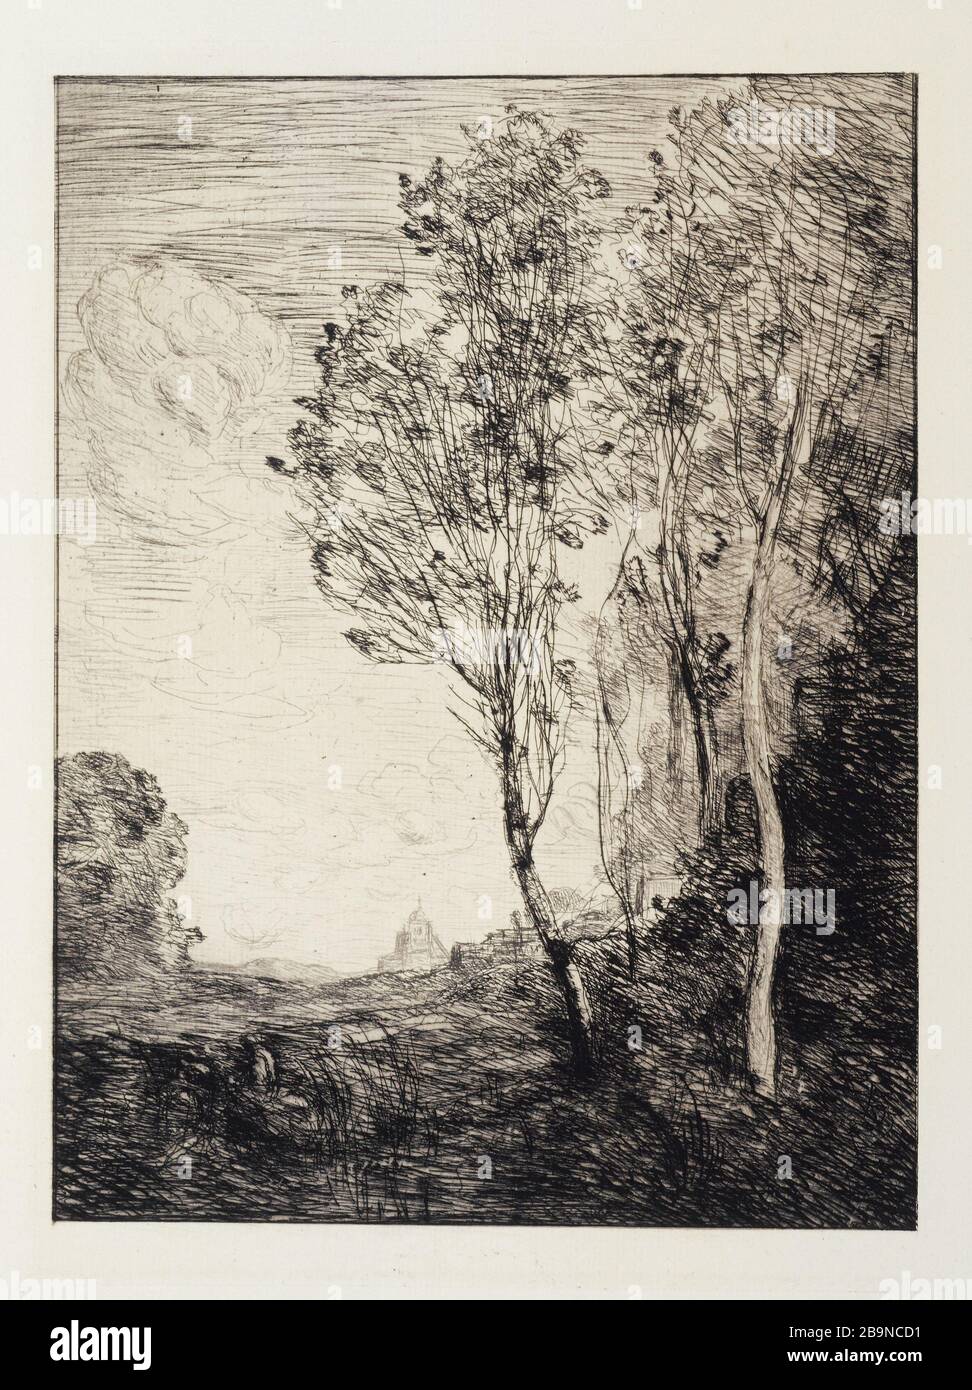 REMEMBRANCE OF ITALY Camille-Jean-Baptiste Corot (1796-1875). 'Souvenir d'Italie', 1863. Eau-forte. Musée des Beaux-Arts de la Ville de Paris, Petit Palais. Stock Photo